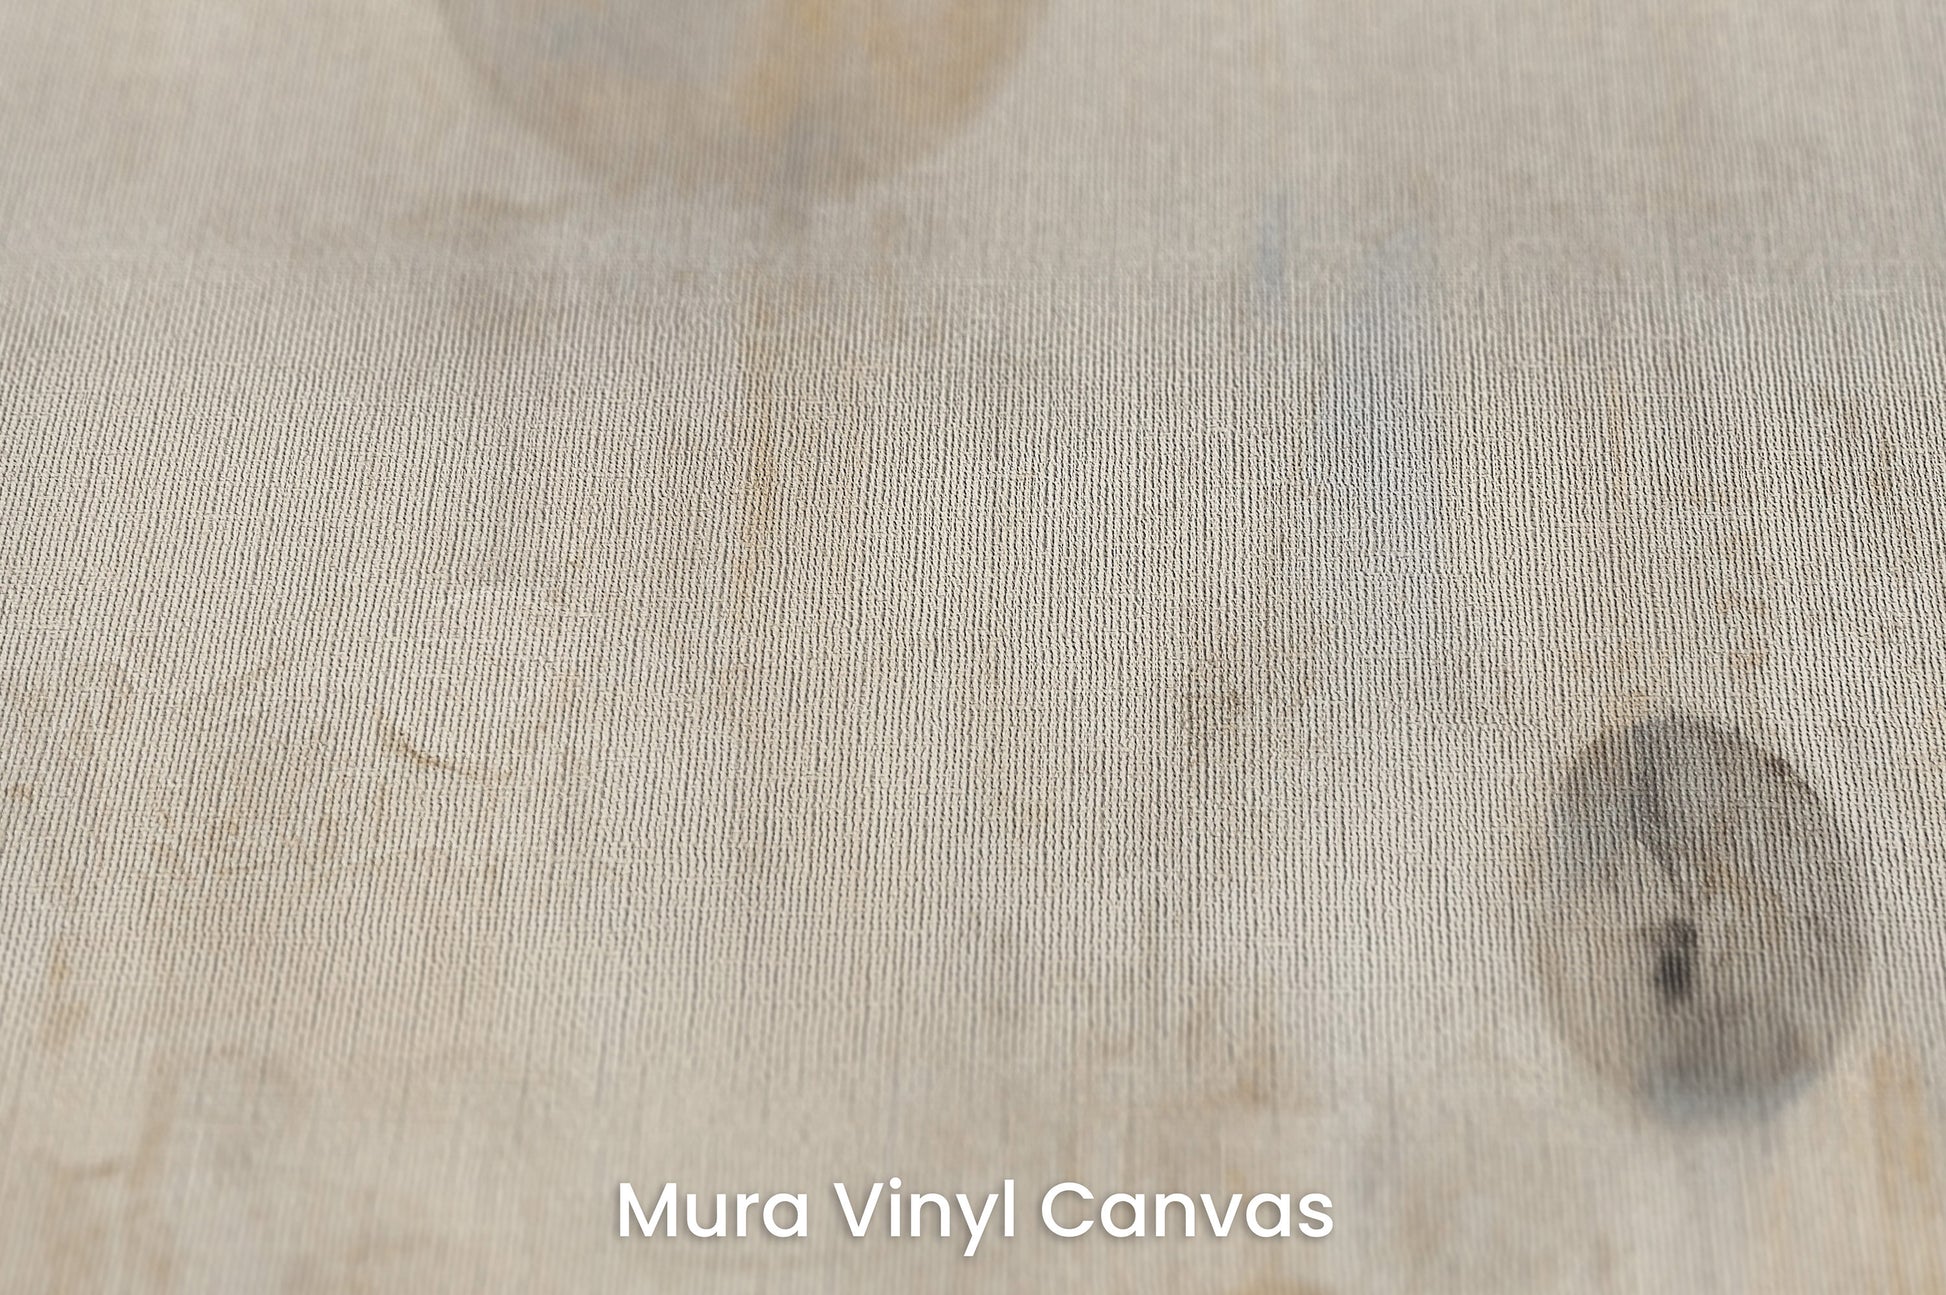 Zbliżenie na artystyczną fototapetę o nazwie WHISPERING ORBITAL SHADOWS na podłożu Mura Vinyl Canvas - faktura naturalnego płótna.